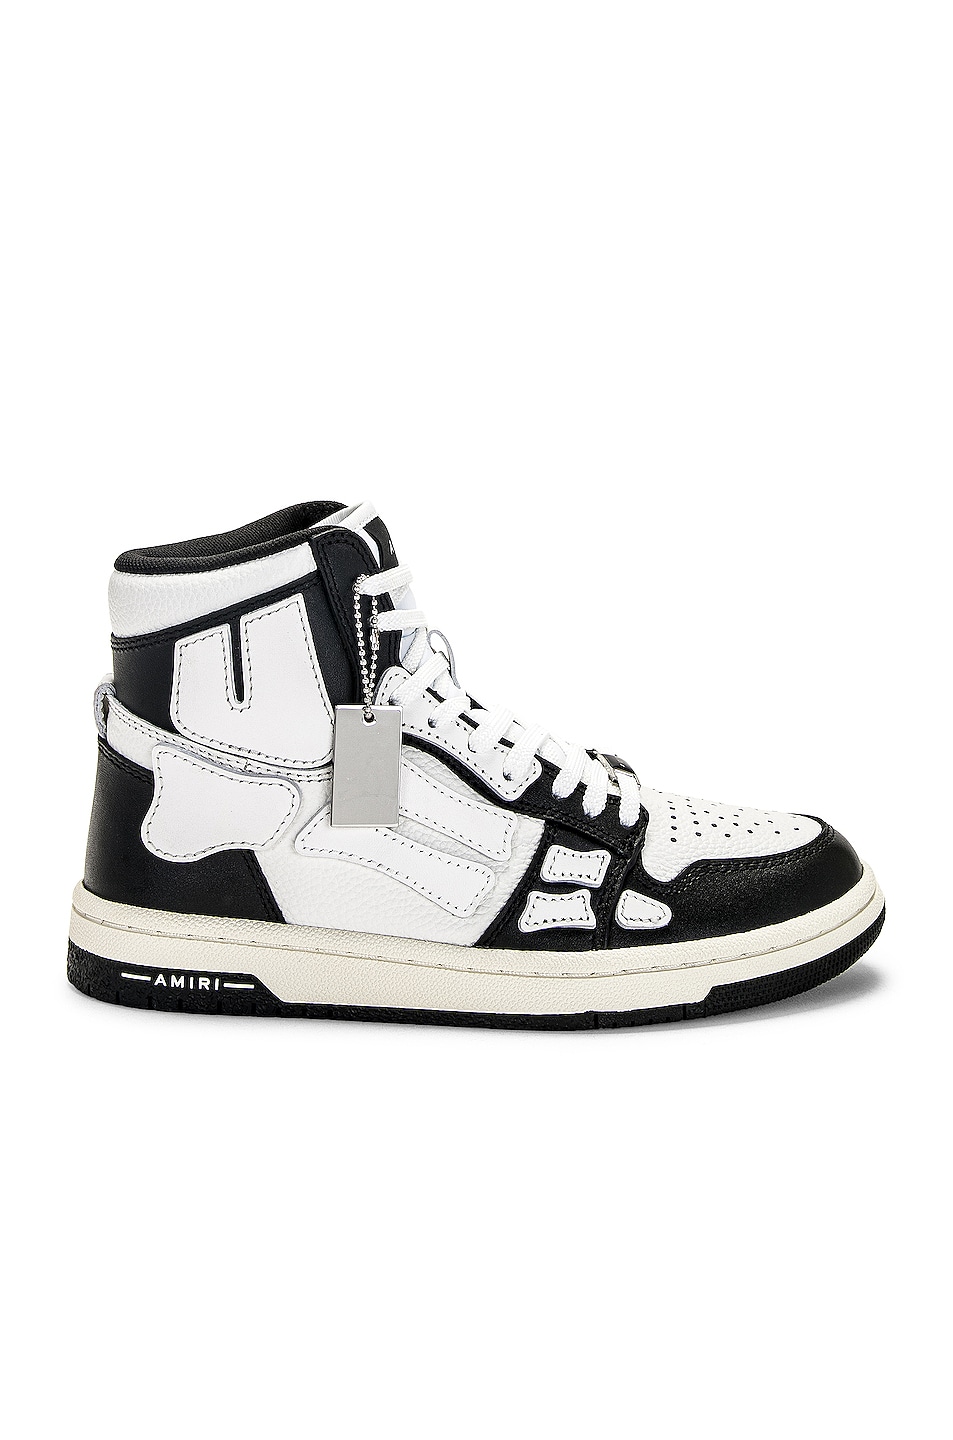 Image 1 of Amiri Skel Top Hi Sneaker in Black & White